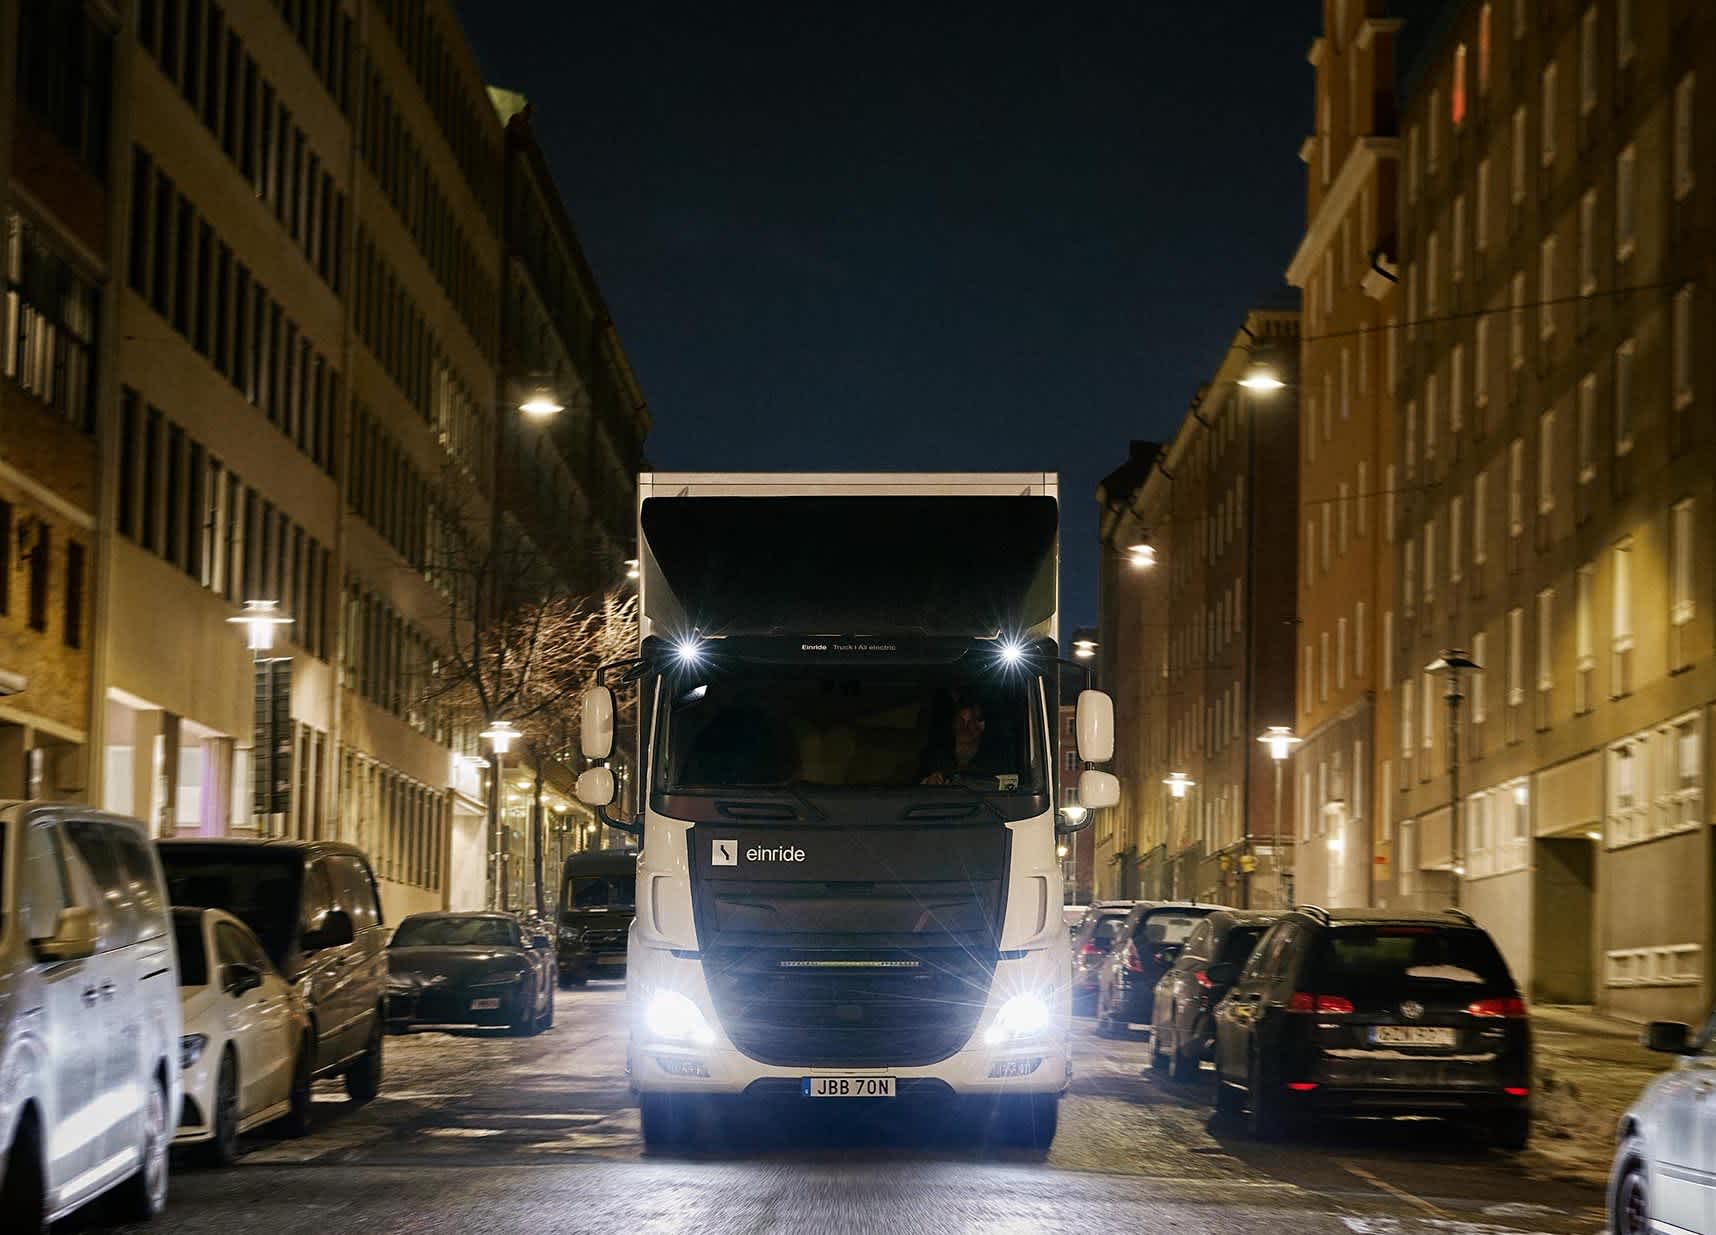 Einride truck in city at night